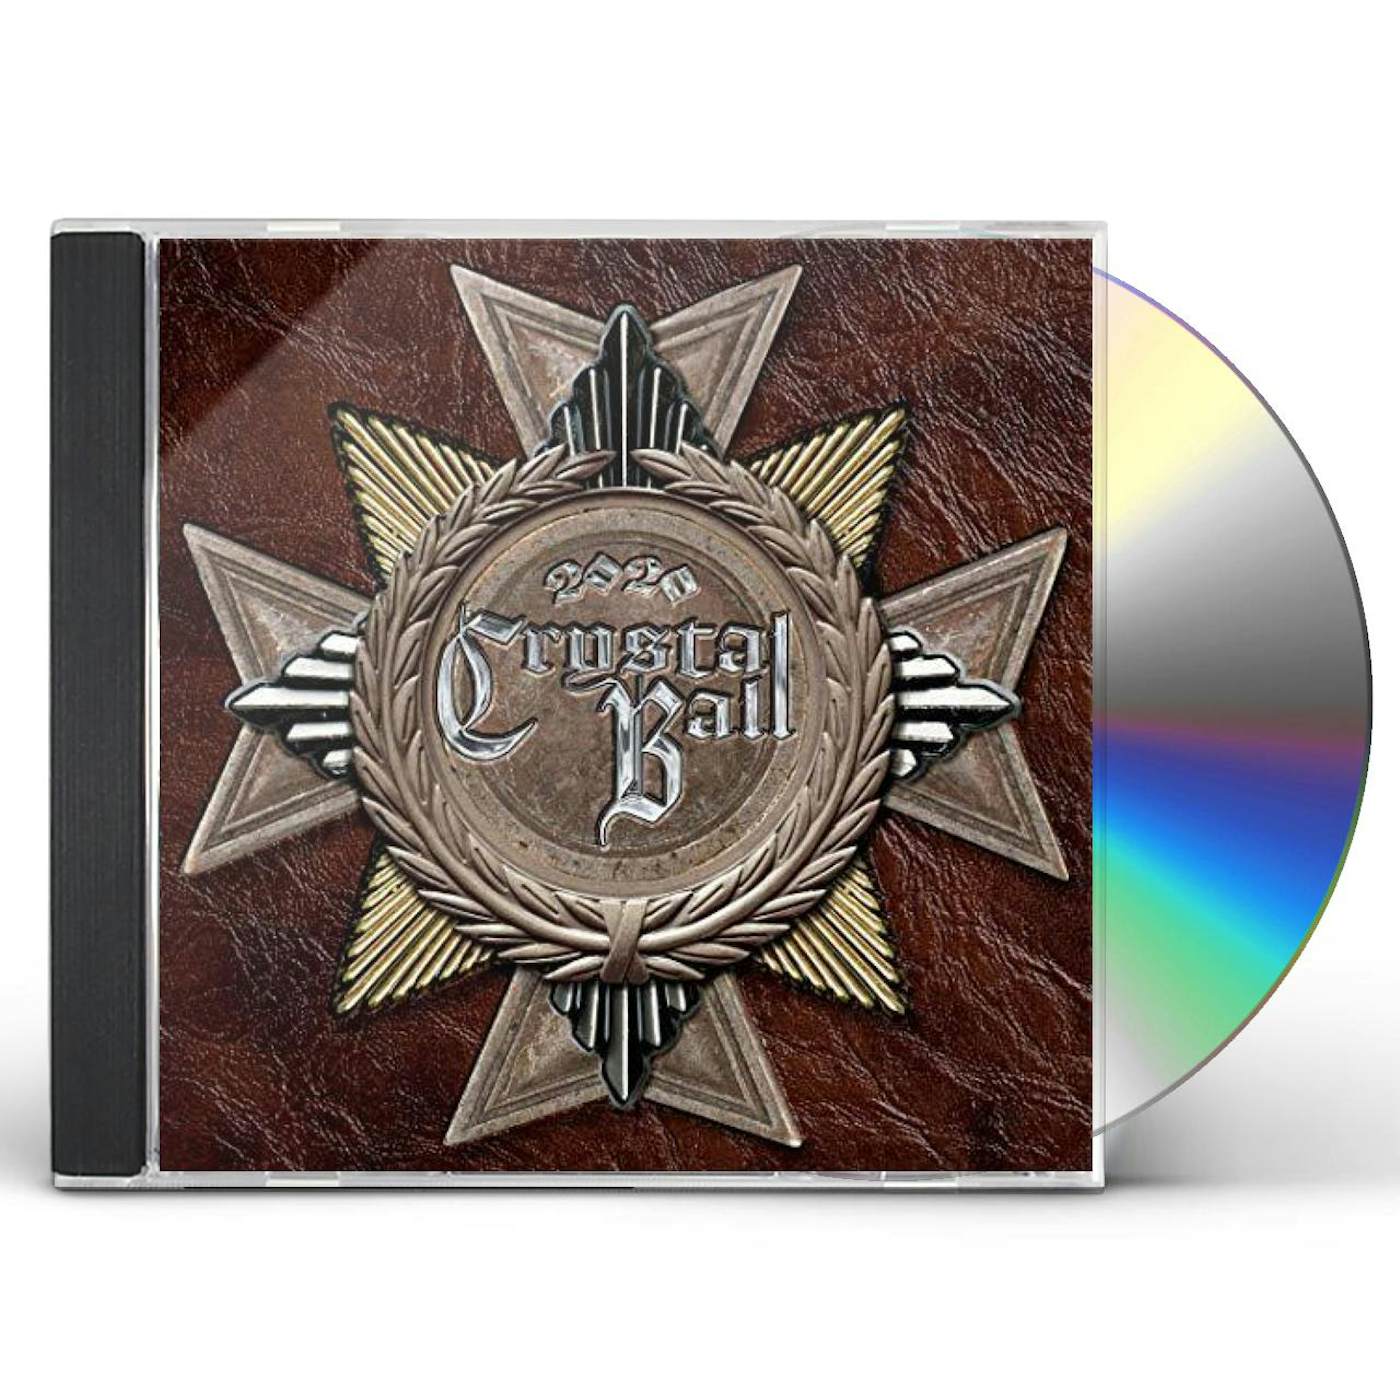 Crystal Ball 2020 cd CD